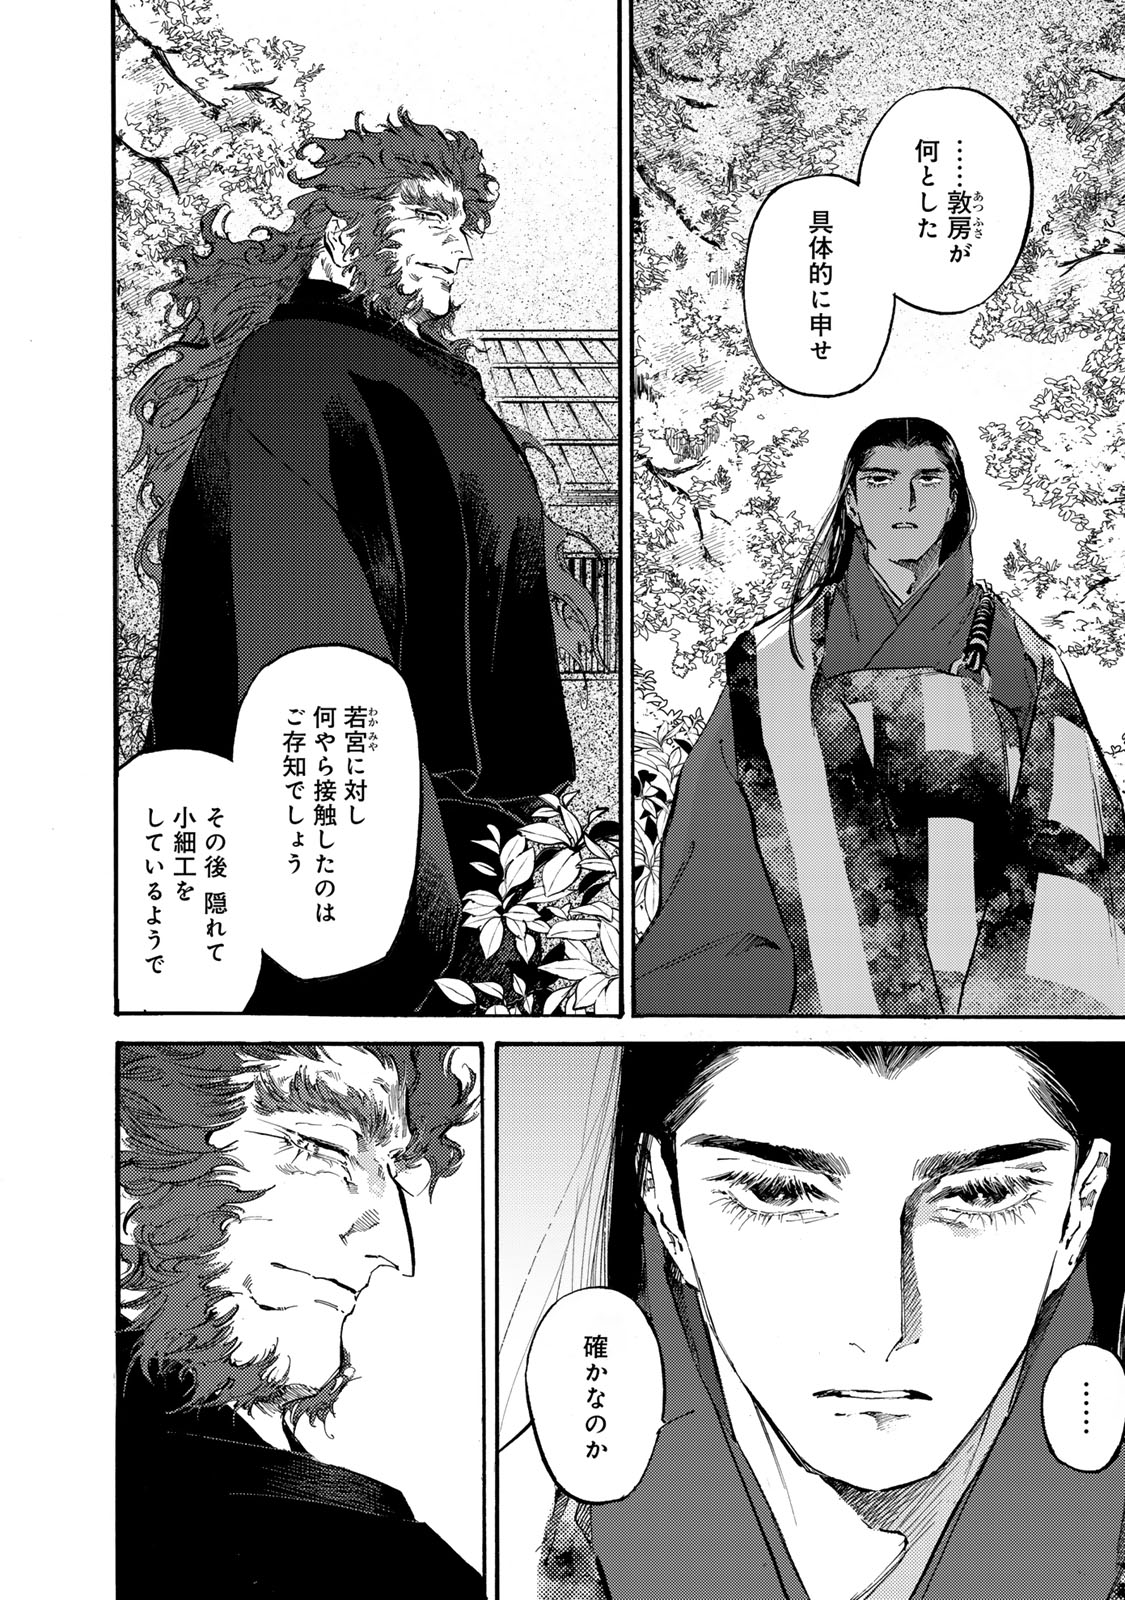 Karasu wa Aruji wo Erabanai - Chapter 39 - Page 2